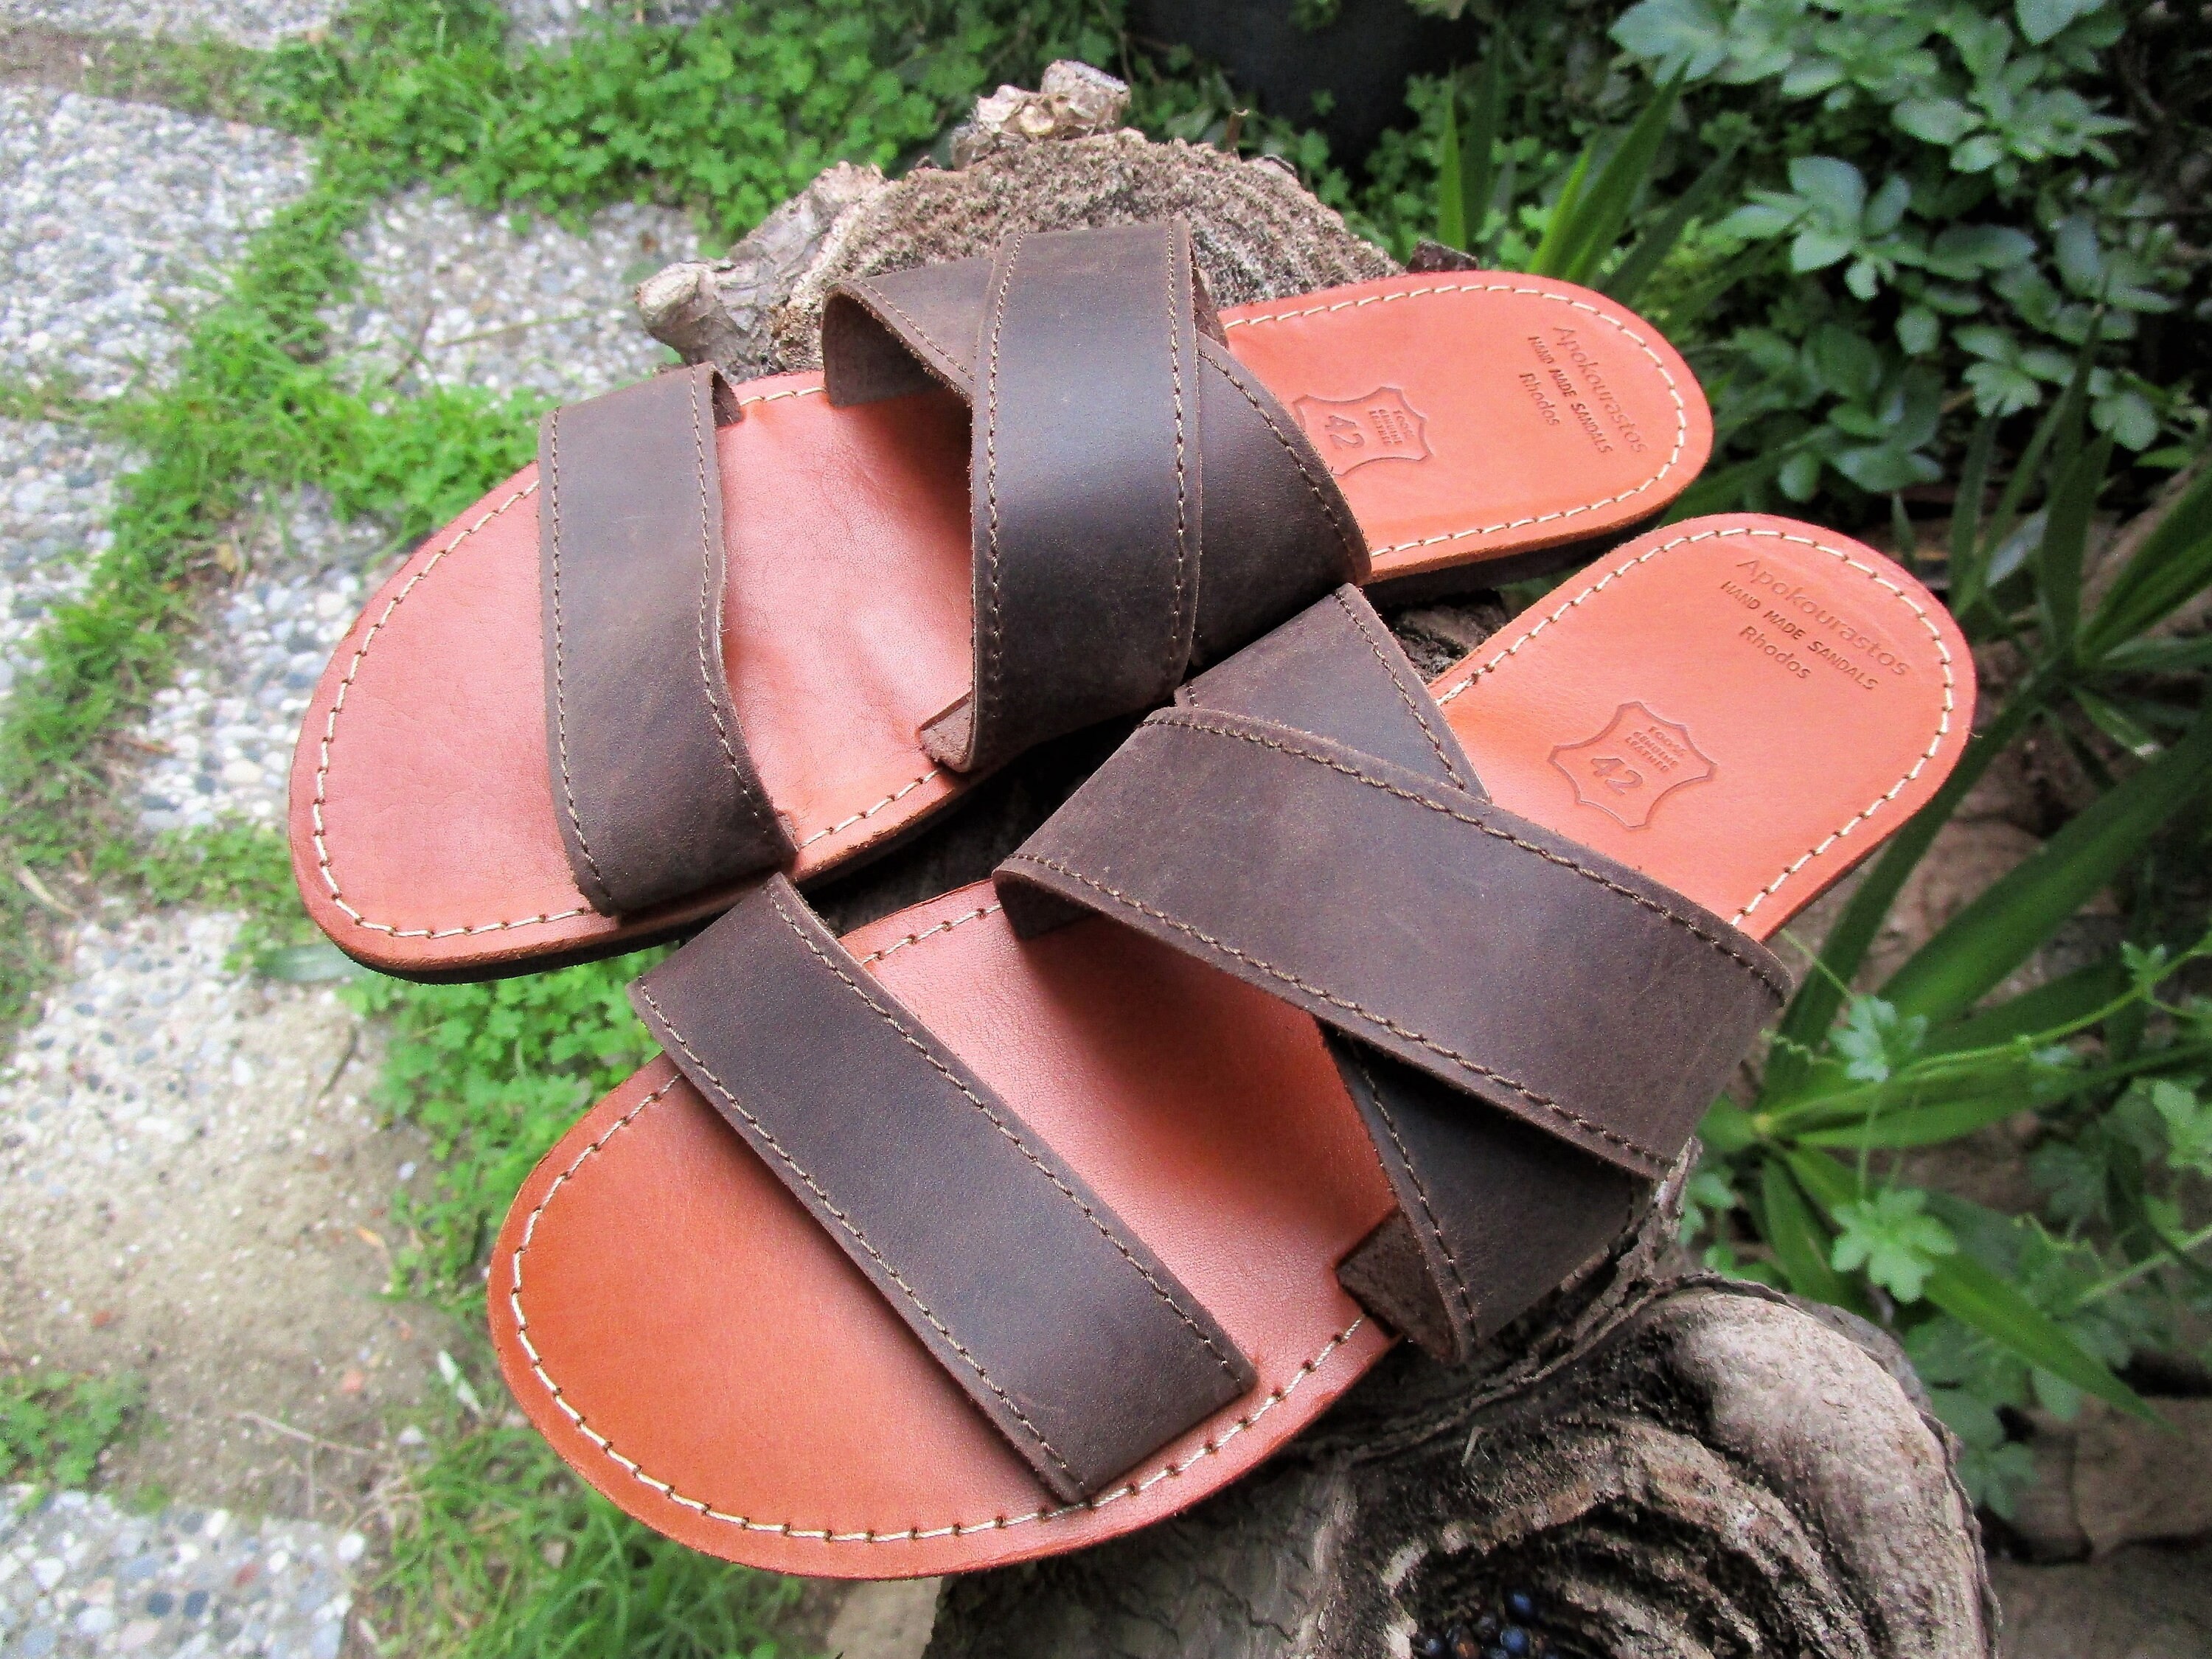 Slide Leather Sandals Cross Strap Sandals -